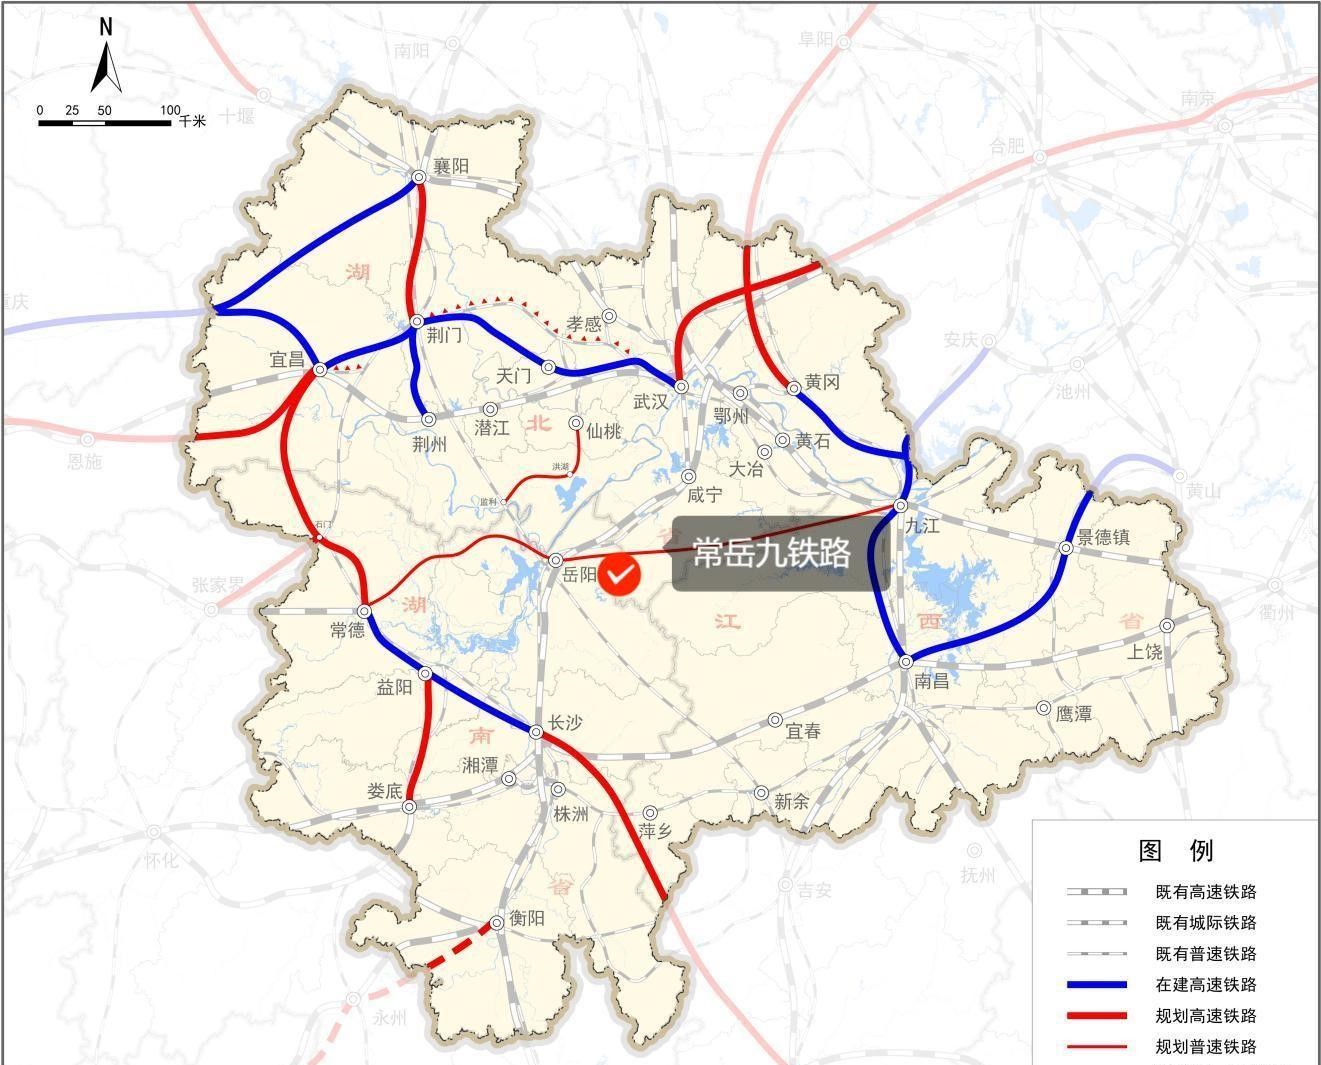 Yiwu ट्रैफिक रोड की नई योजना में प्रवेश करना